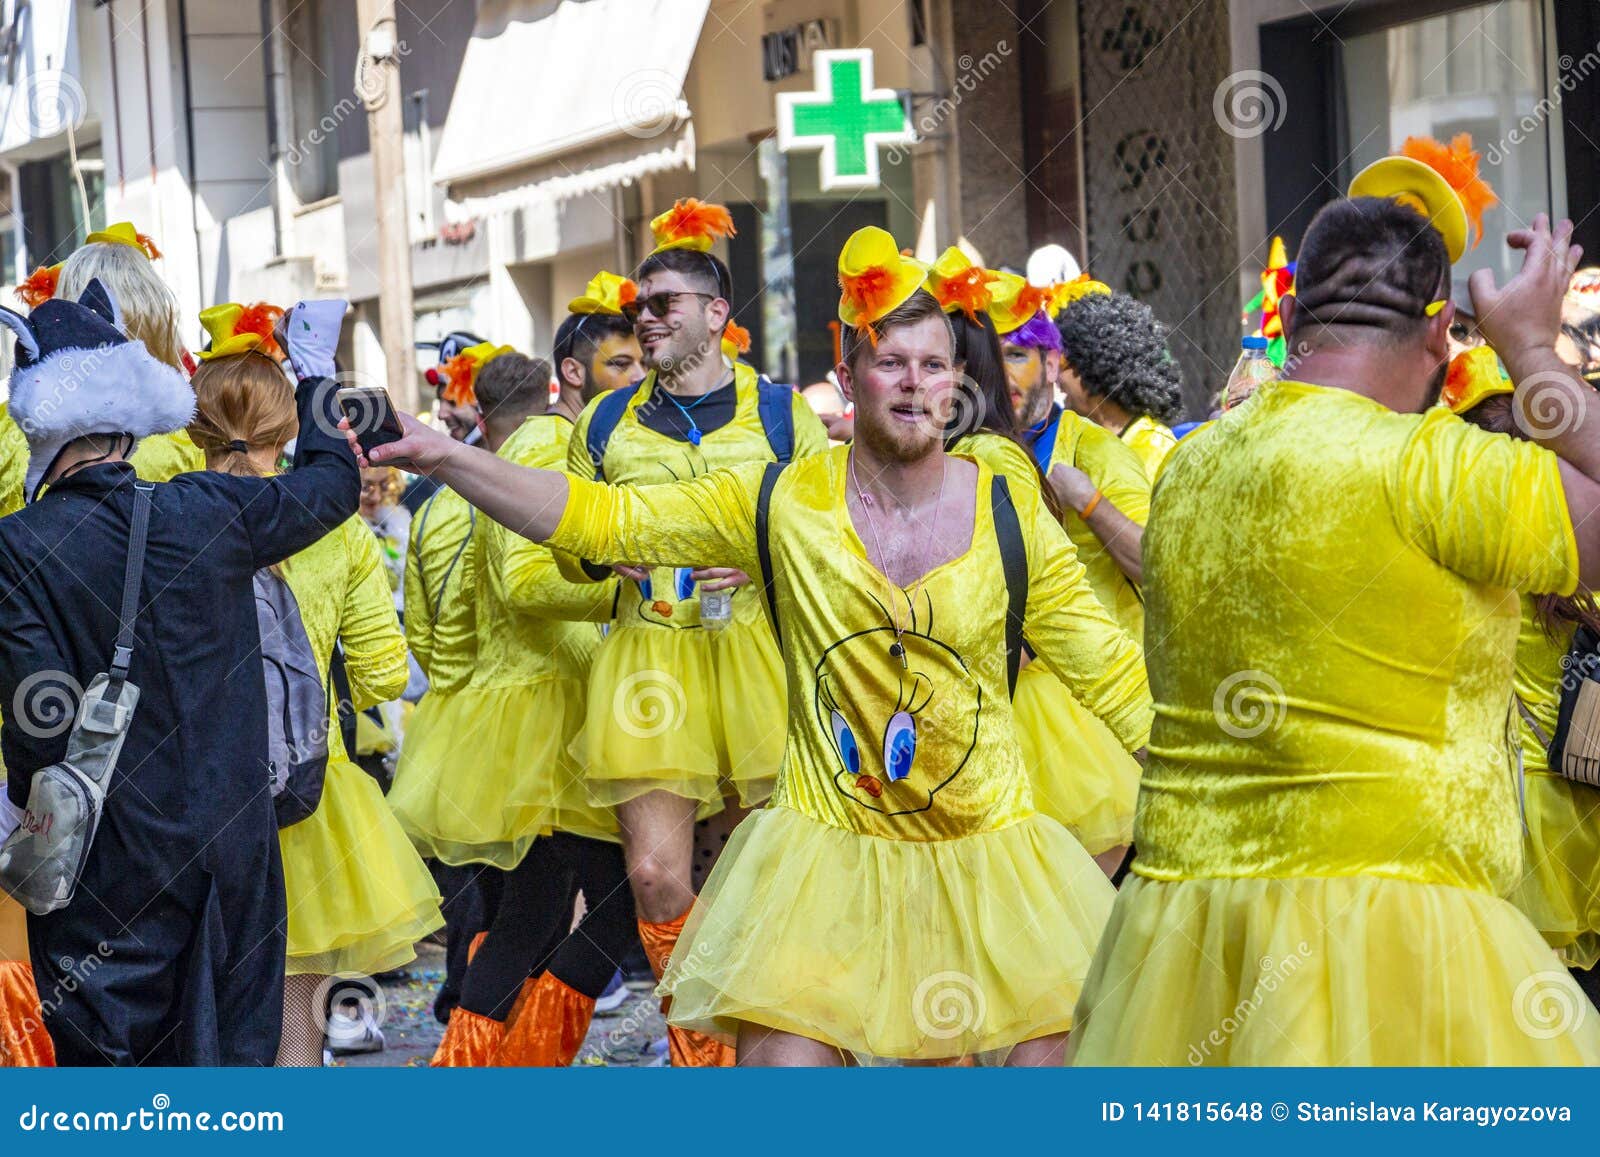 male-carnival-parade-participants-dresse